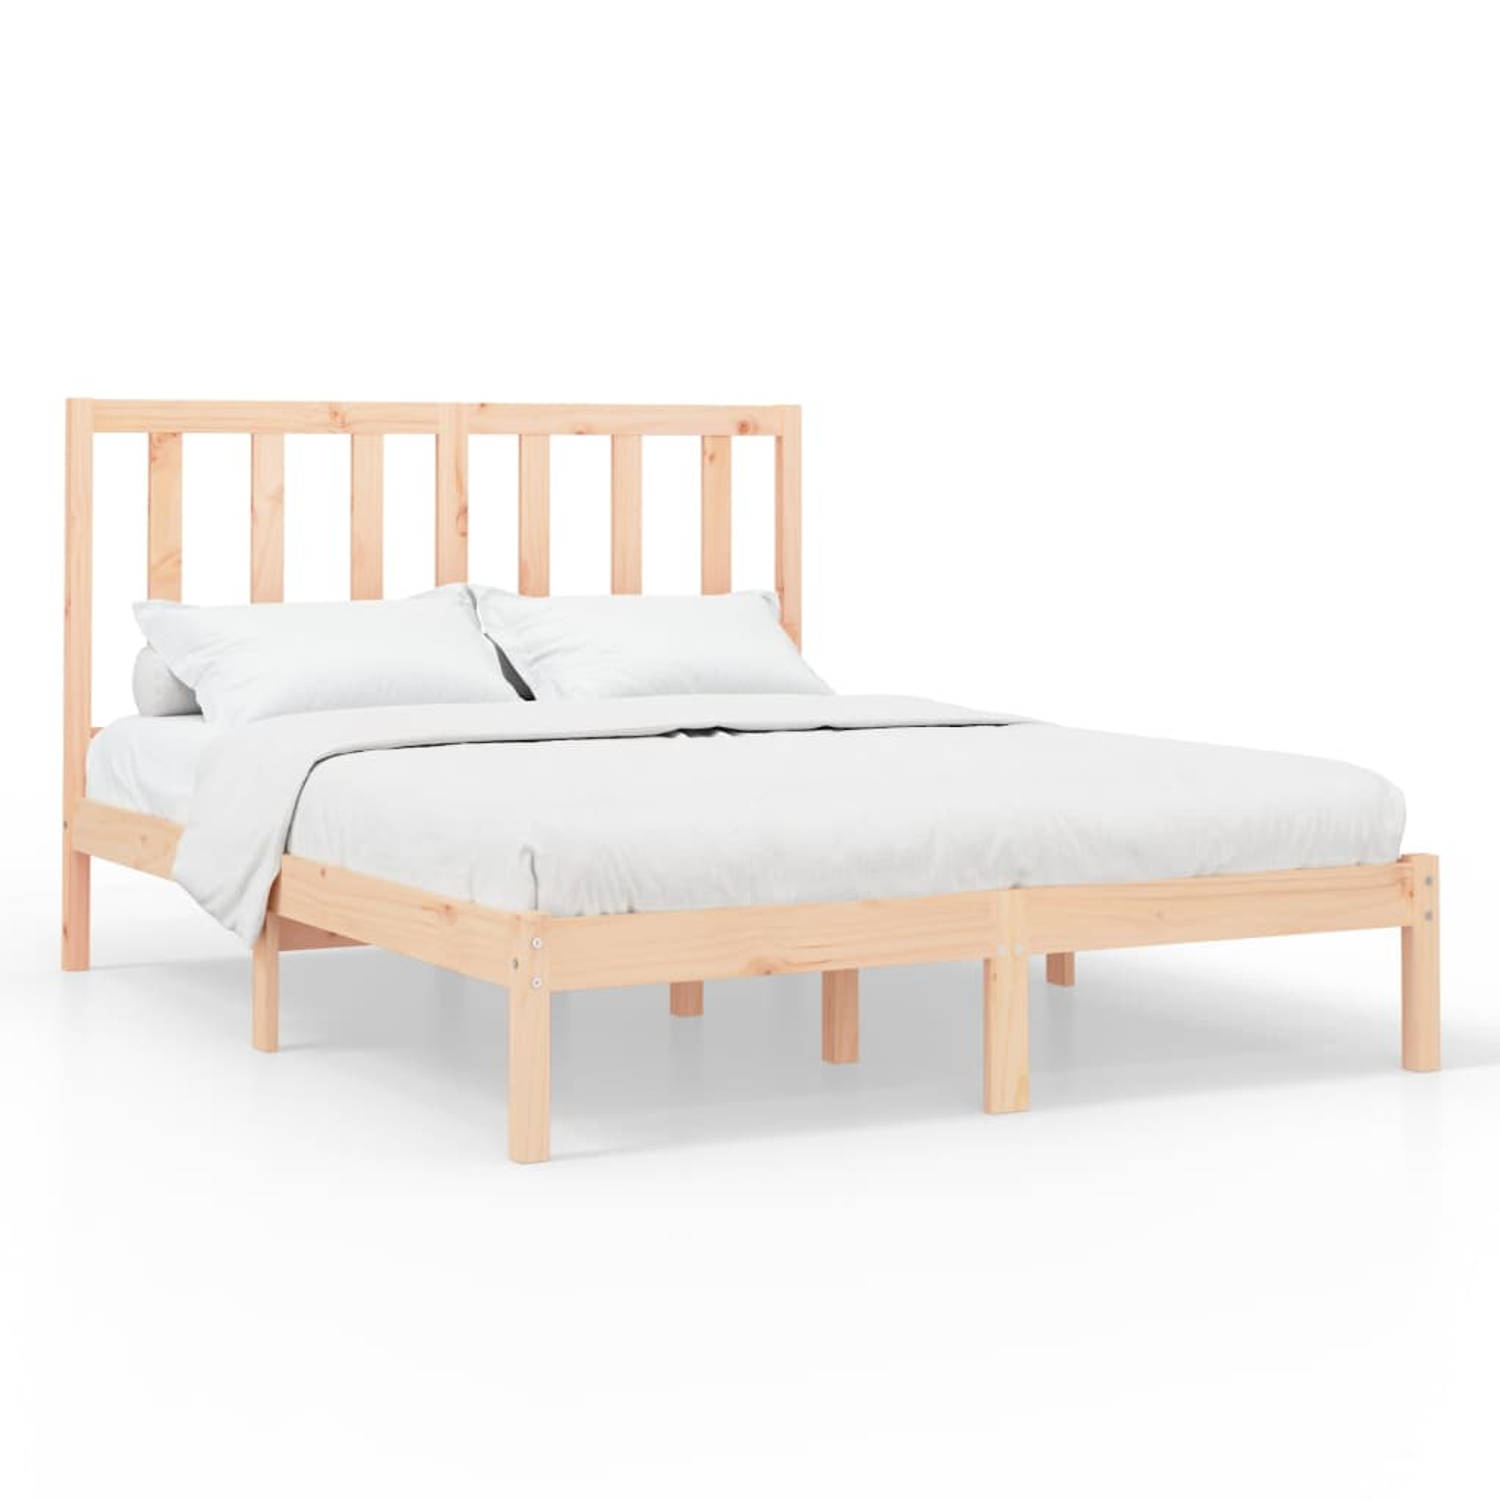 The Living Store Bedframe massief hout 120x200 cm - Bedframe - Bedframes - Tweepersoonsbed - Bed - Bedombouw - Dubbel Bed - Frame - Bed Frame - Ledikant - Bedframe Met Hoofdeinde -